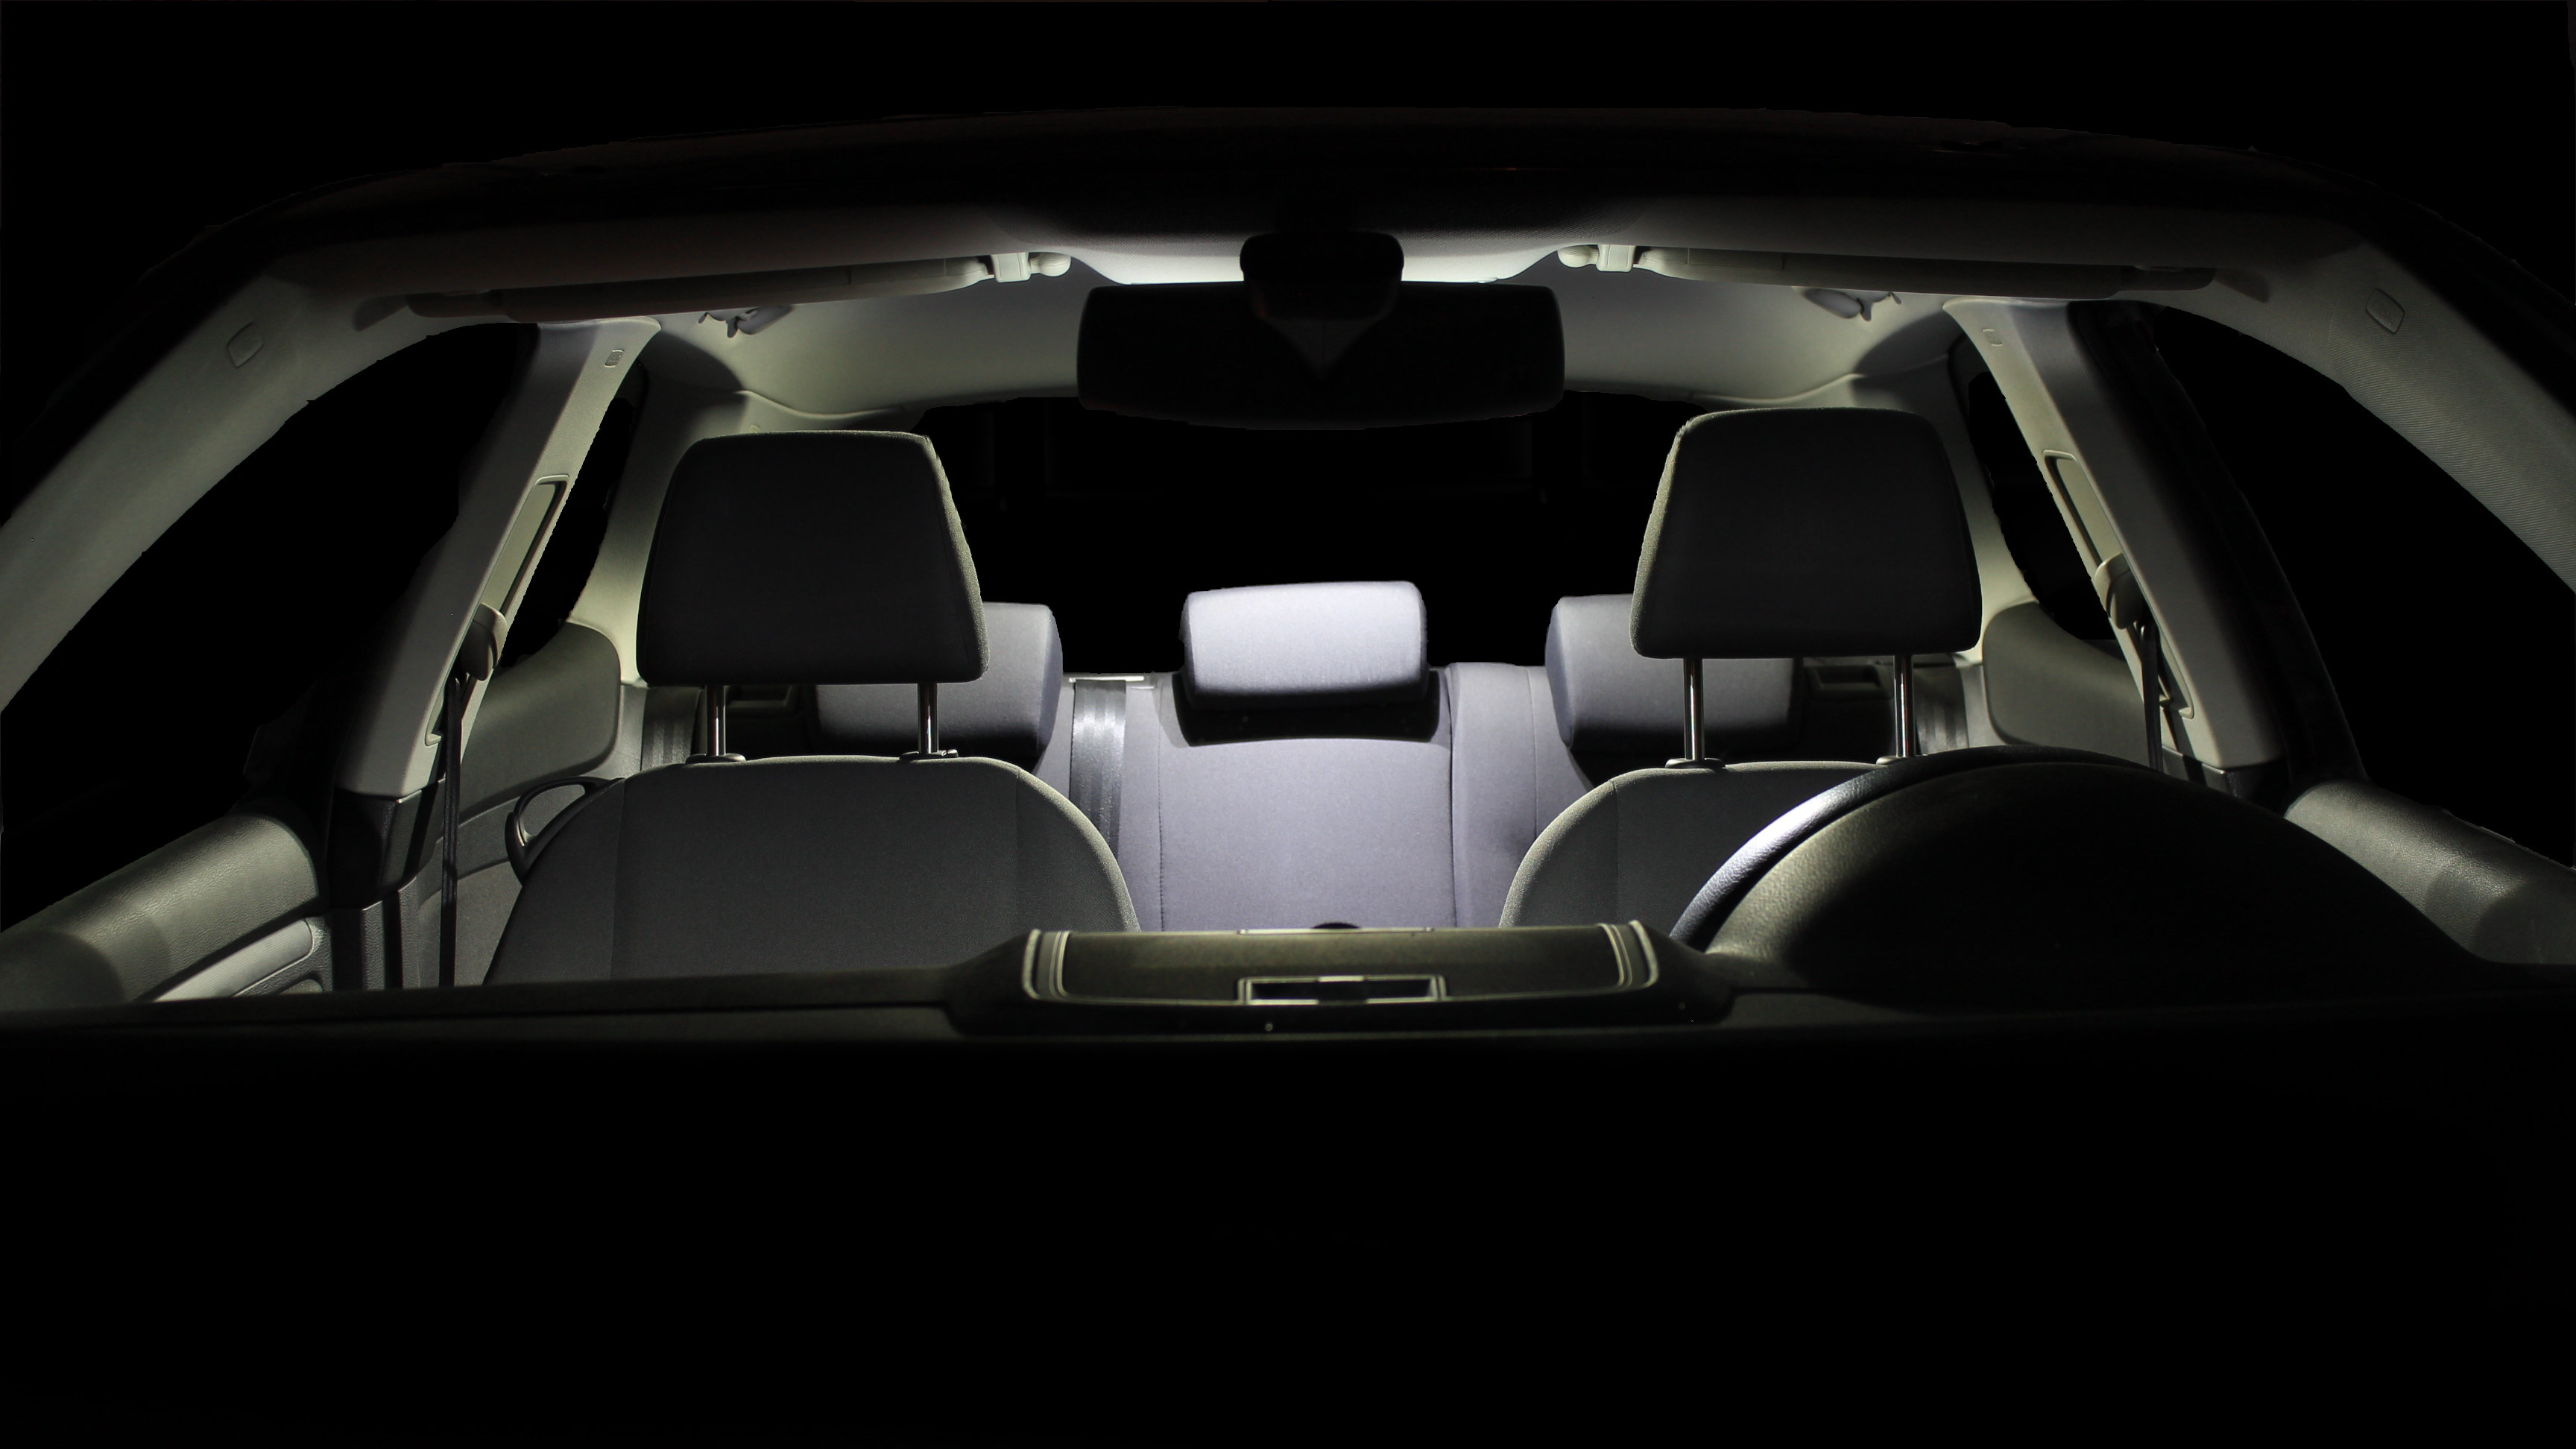 Света в машине год. Освещение автомобиля. Car Interior Lighting led. Внутреннее освещение автомобиля.